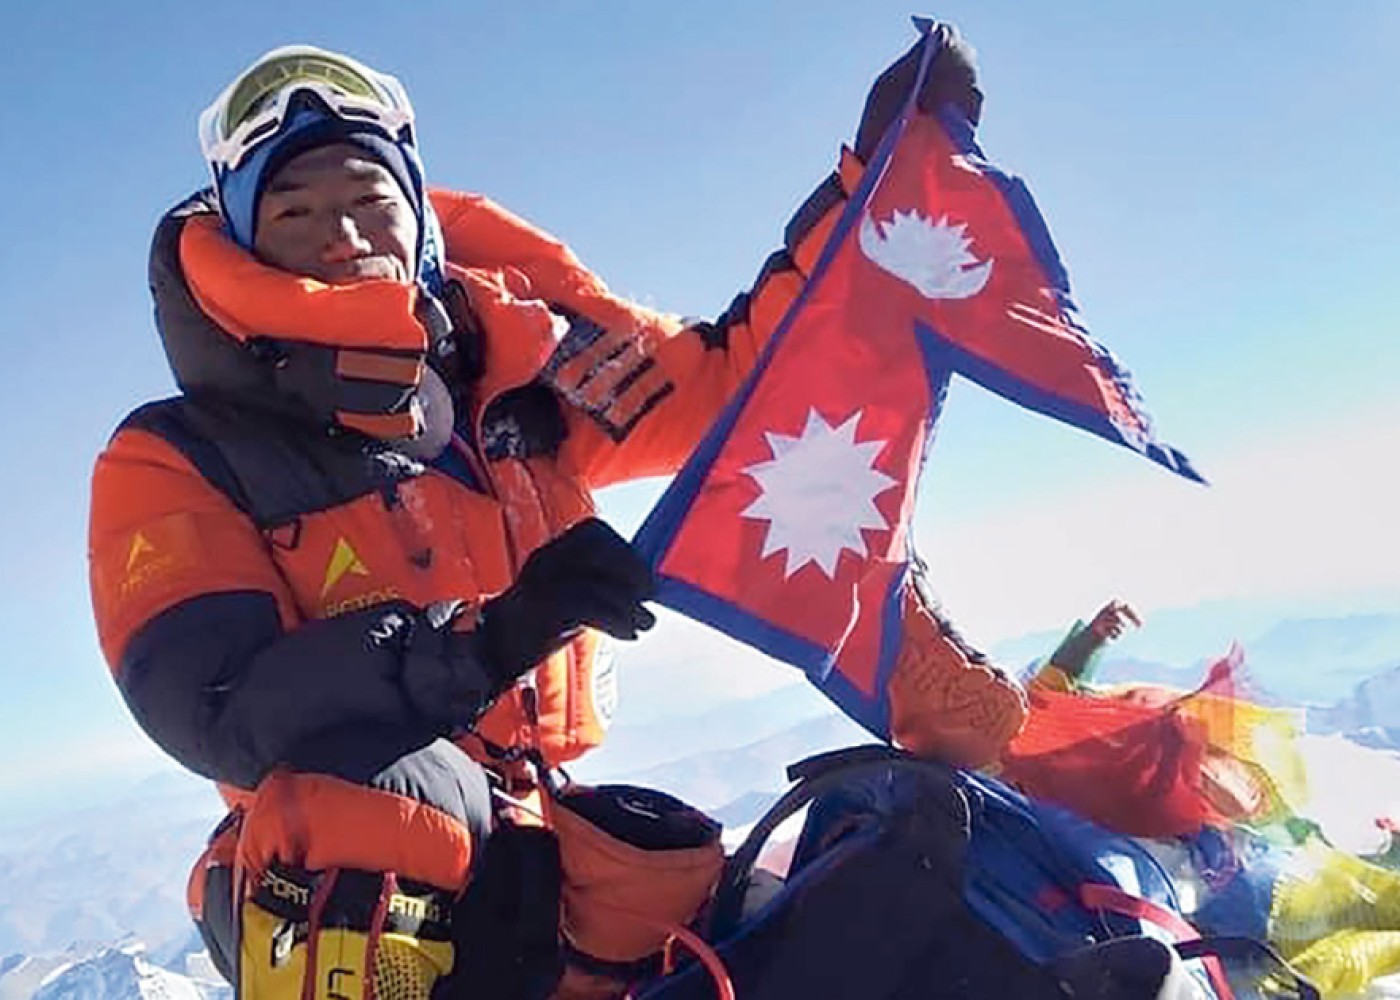 Nepallı alpinist Everesti 29-cu dəfə fəth edərək öz rekordunuYENİLƏDİ - FOTO